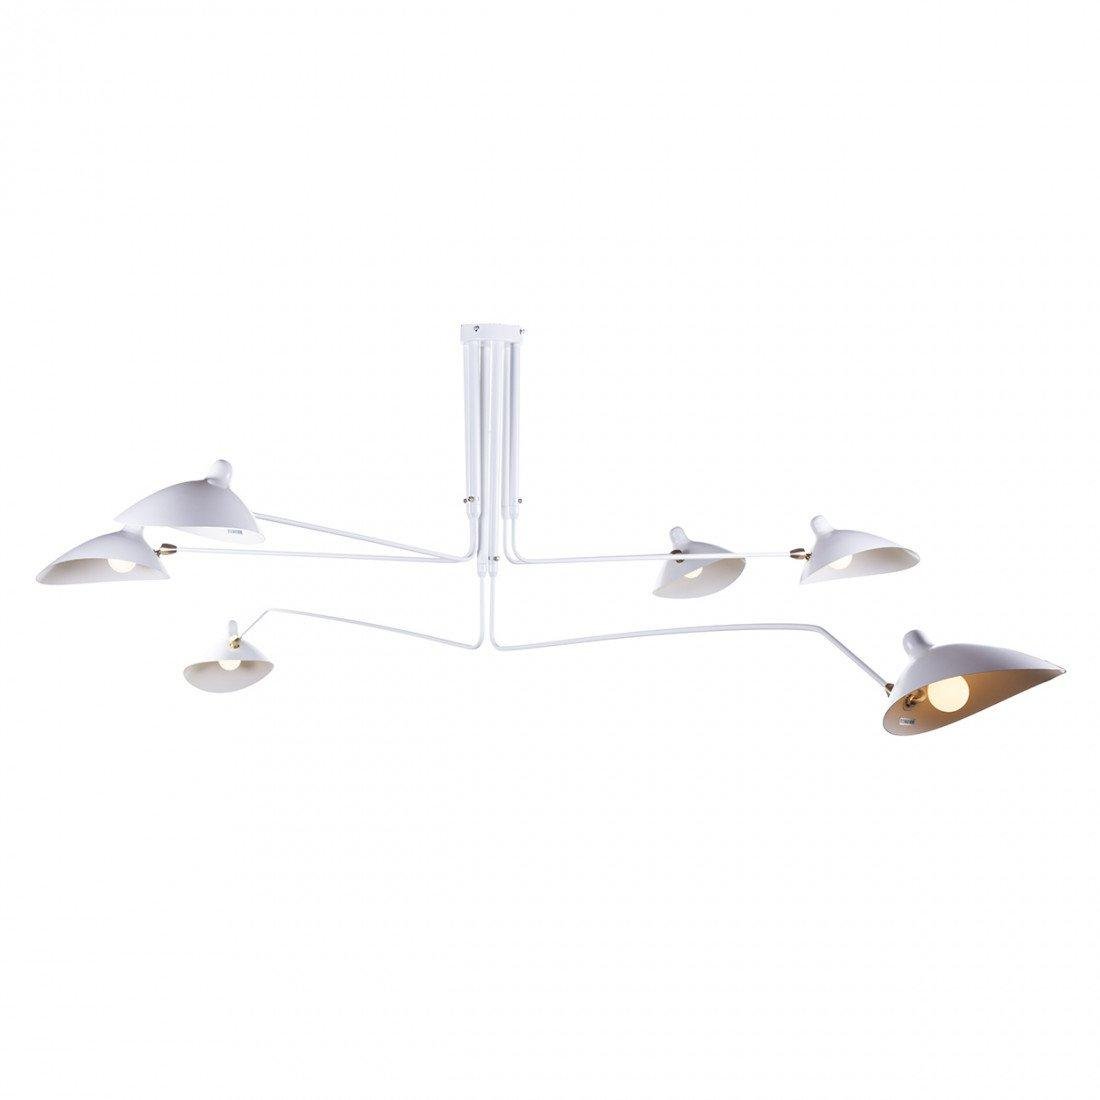 6-Headed White Serge Mouille Ceiling Light - Large Size: L 86.6" x H 12.6" (L 220cm x H 32cm)